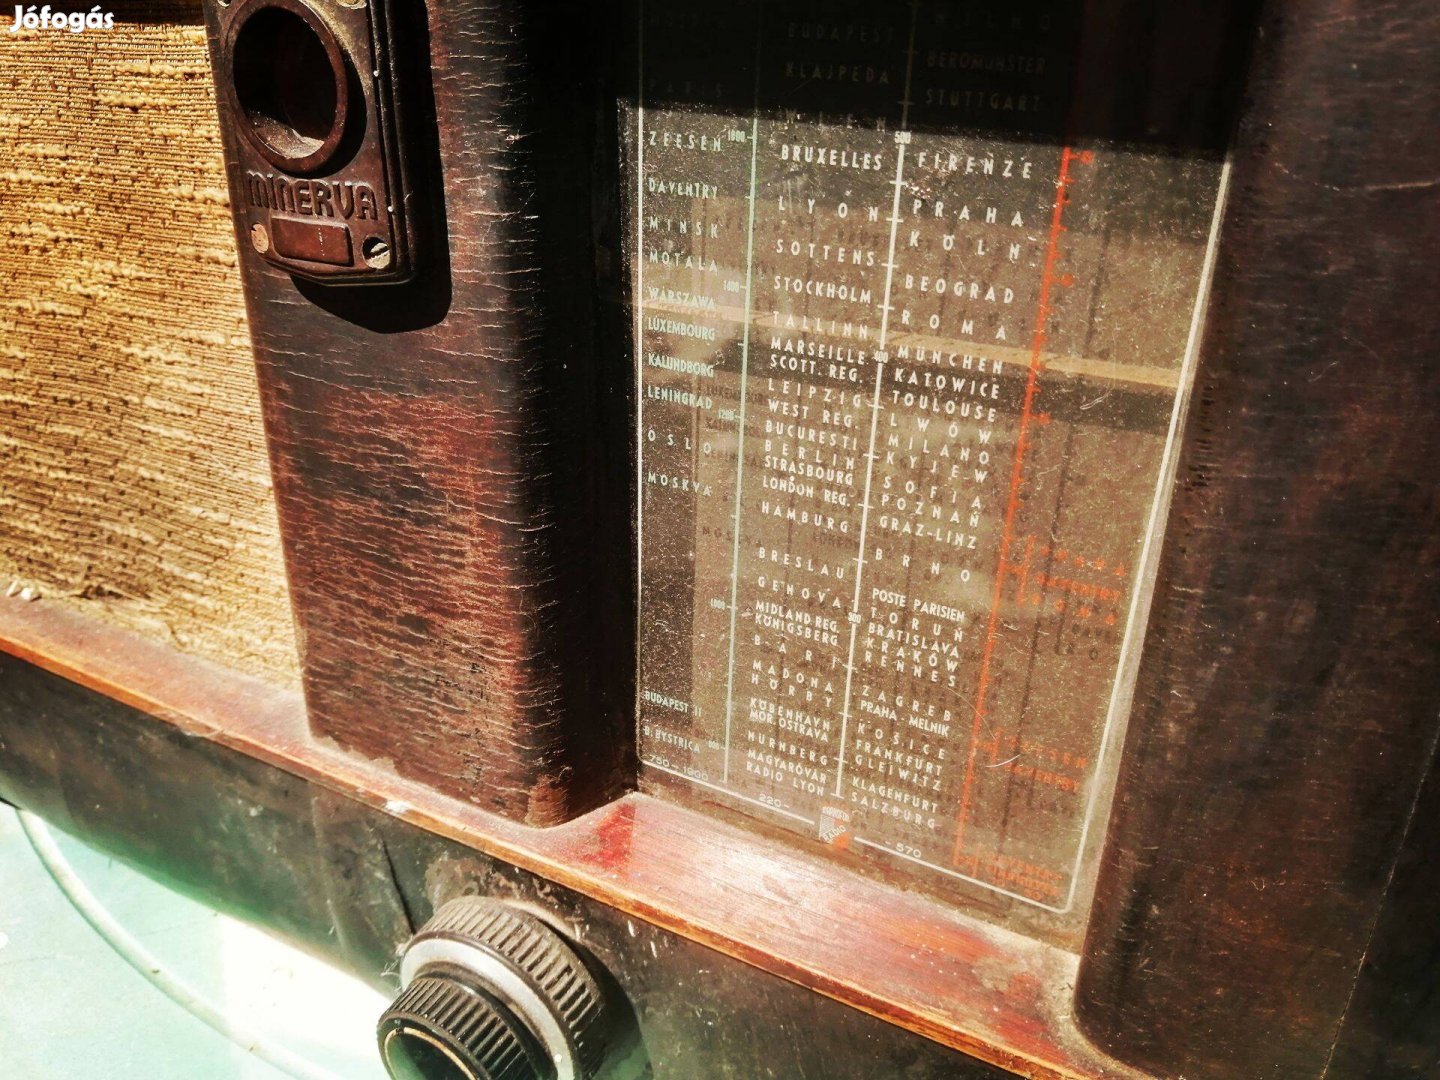 Eladó régi Minerva rádió, 1940-es évekből származik